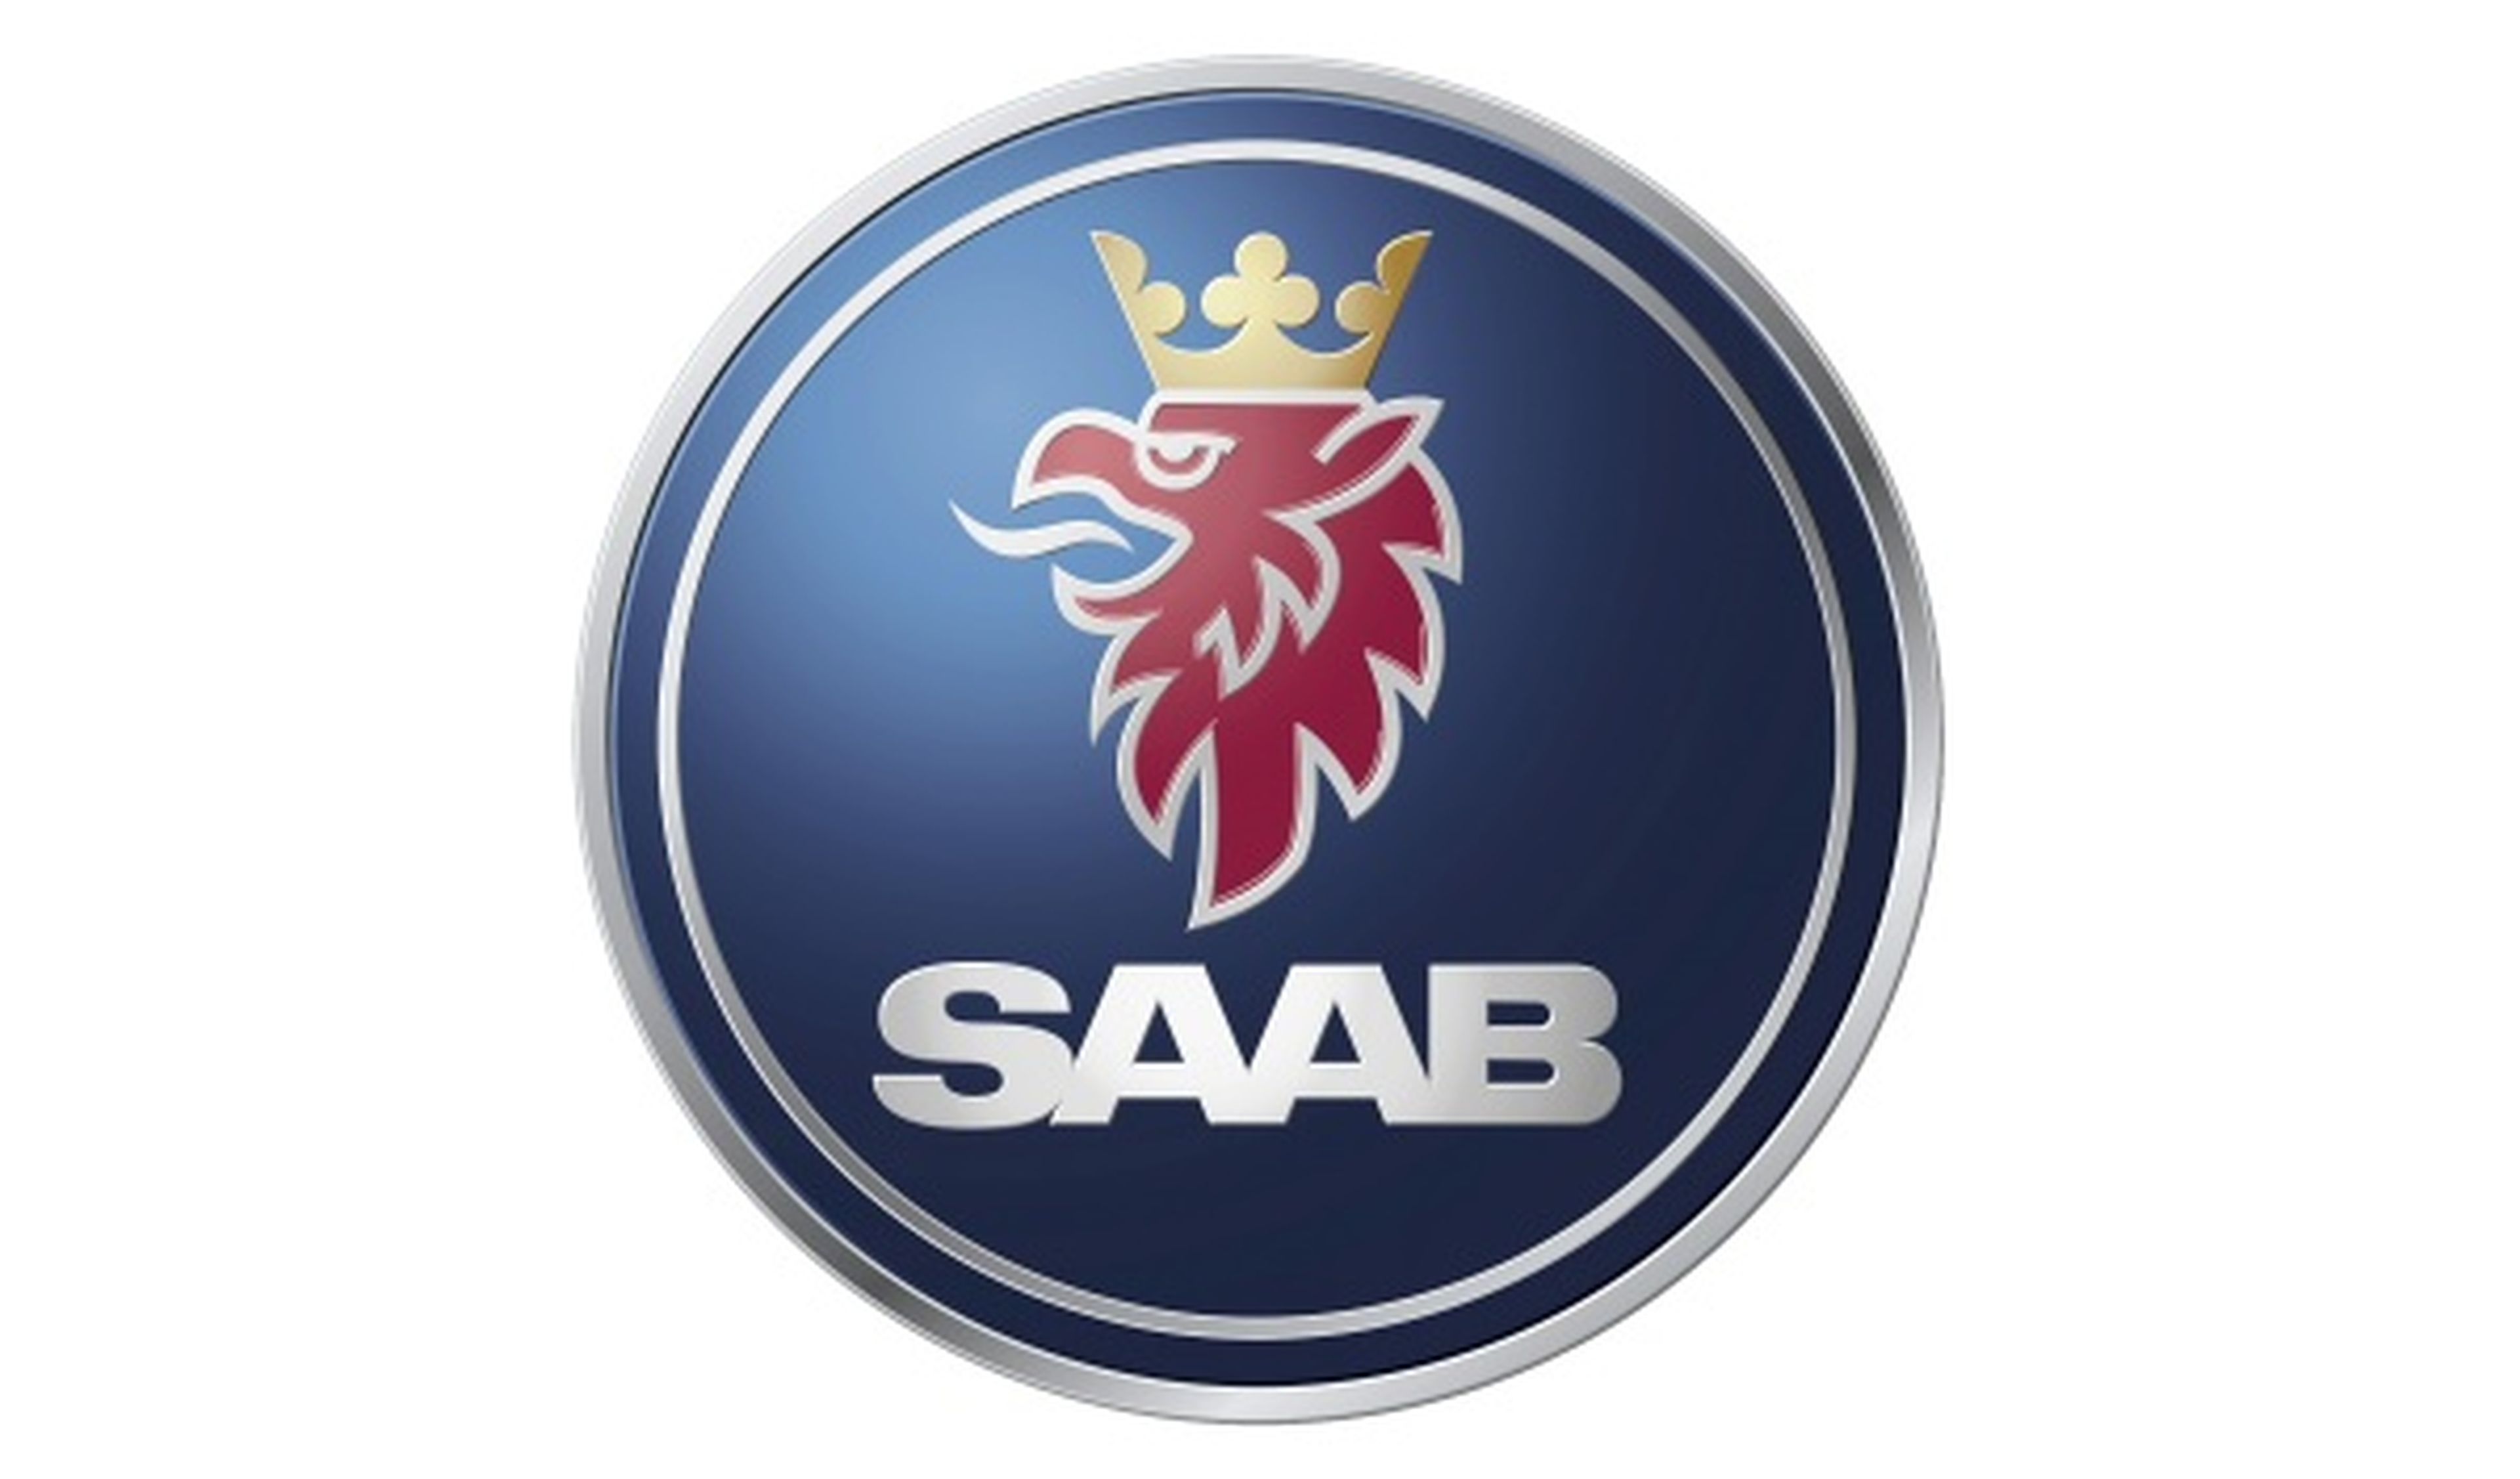 El nuevo propietario de Saab no podrá usar su imagen